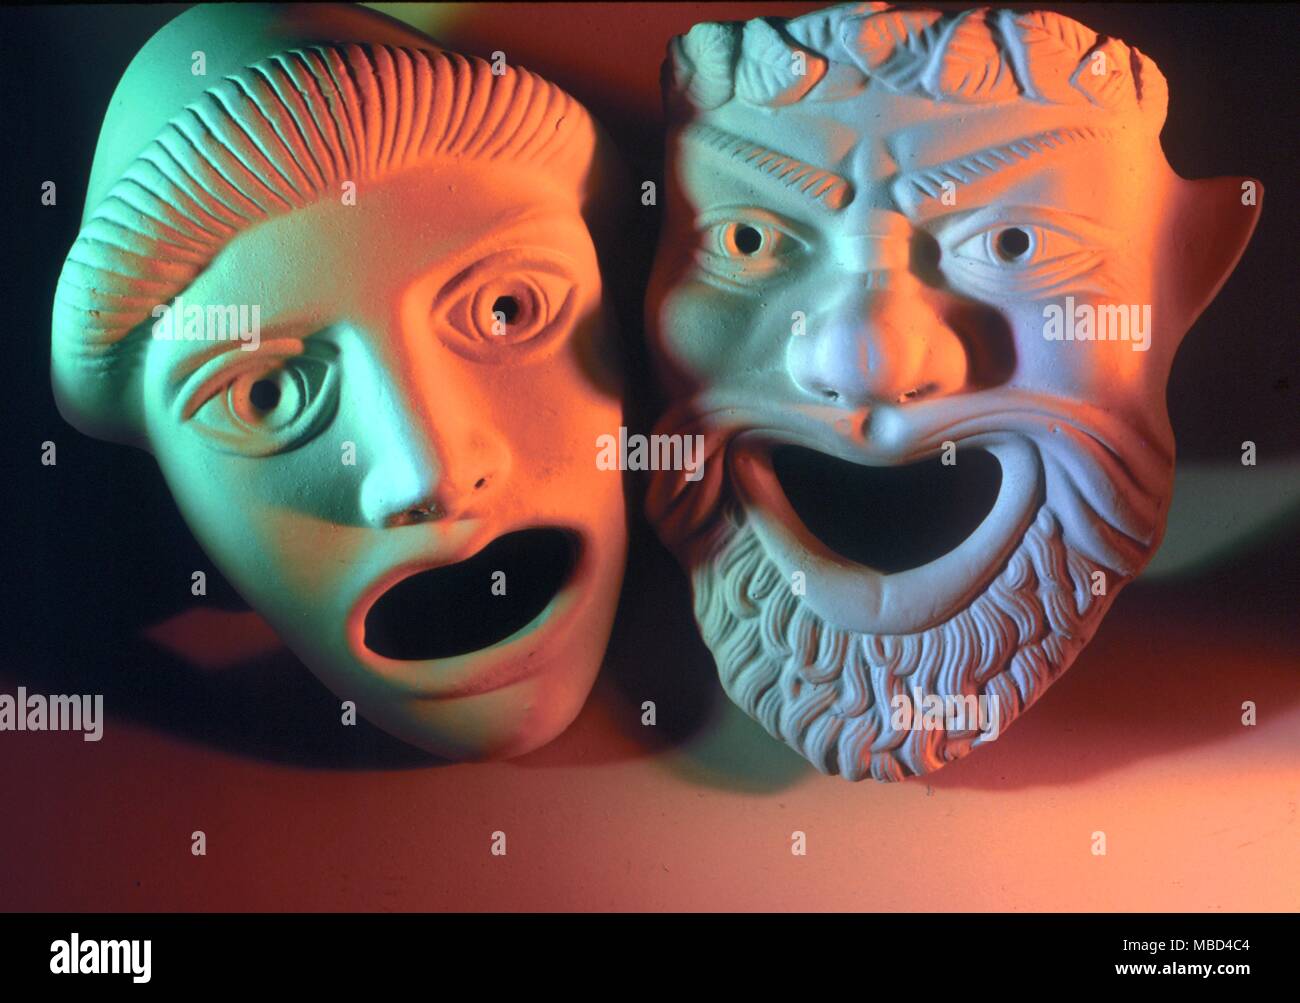 Le maschere - Greco attori' maschere - coppia di maschere teatrali, basate su antiche originali greci: talvolta chiamato la commedia e la Tragedia. - © / Charles Walker Foto Stock